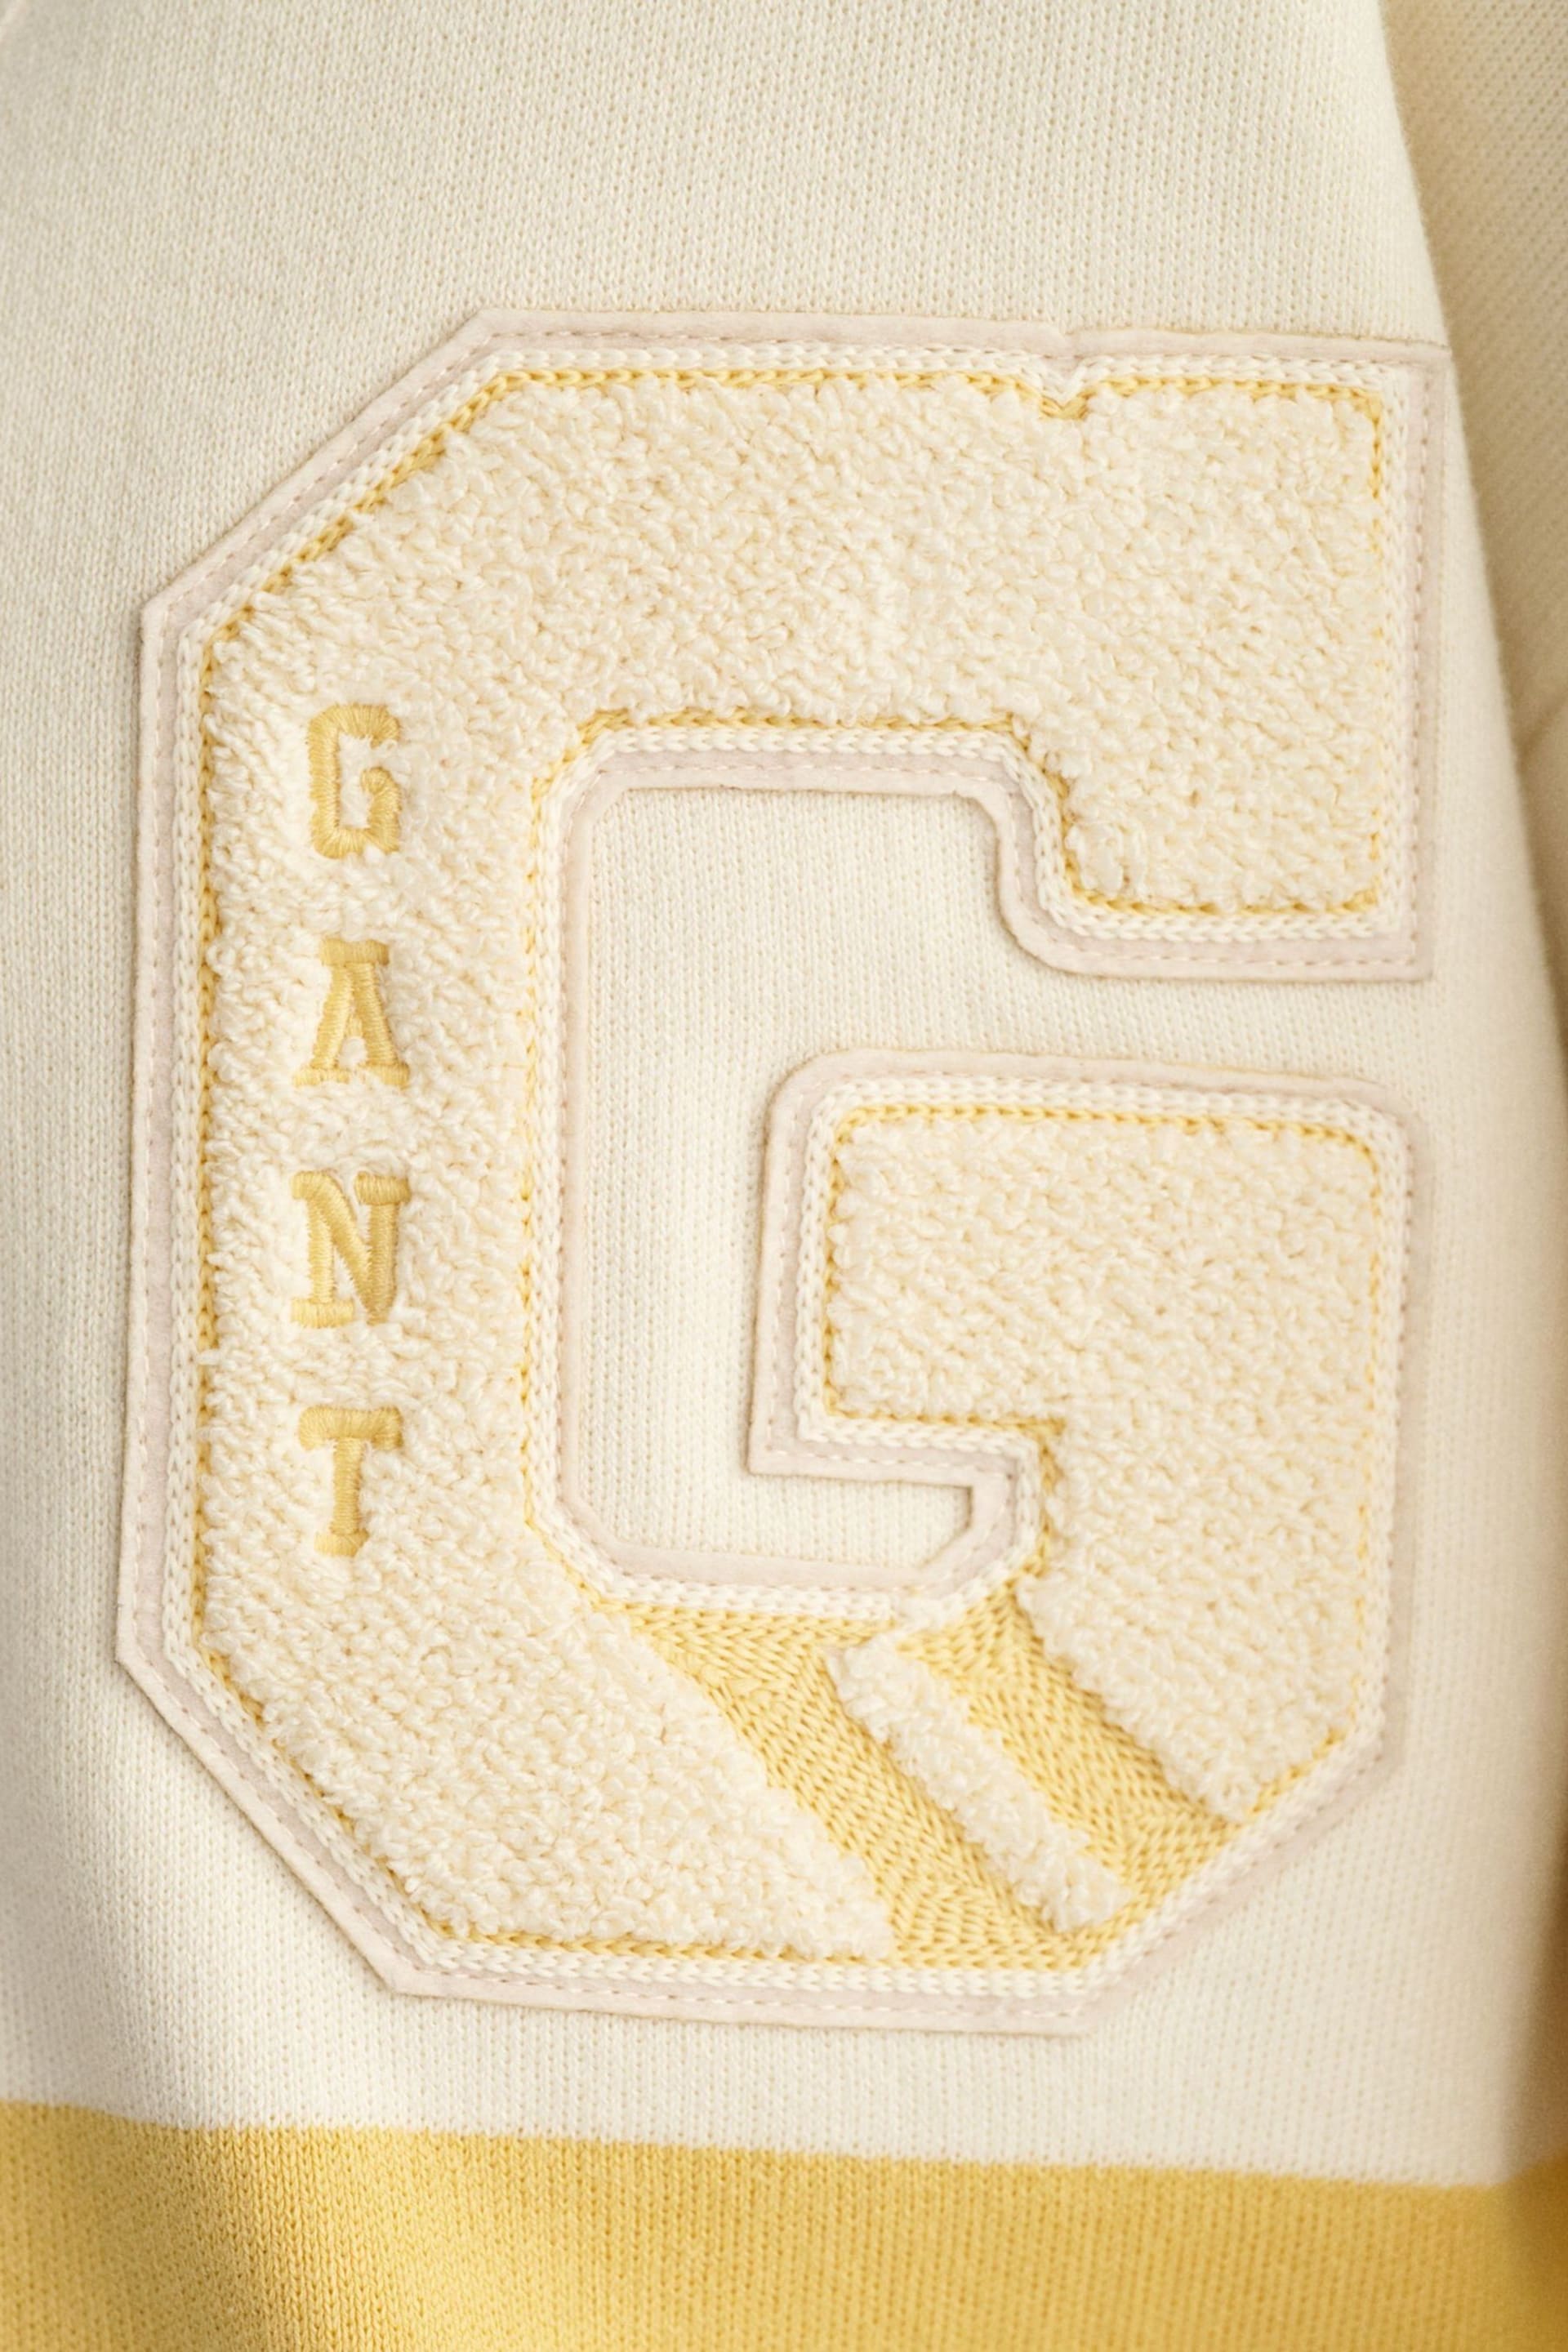 GANT Cream Varsity V-Neck Cardigan - Image 6 of 7